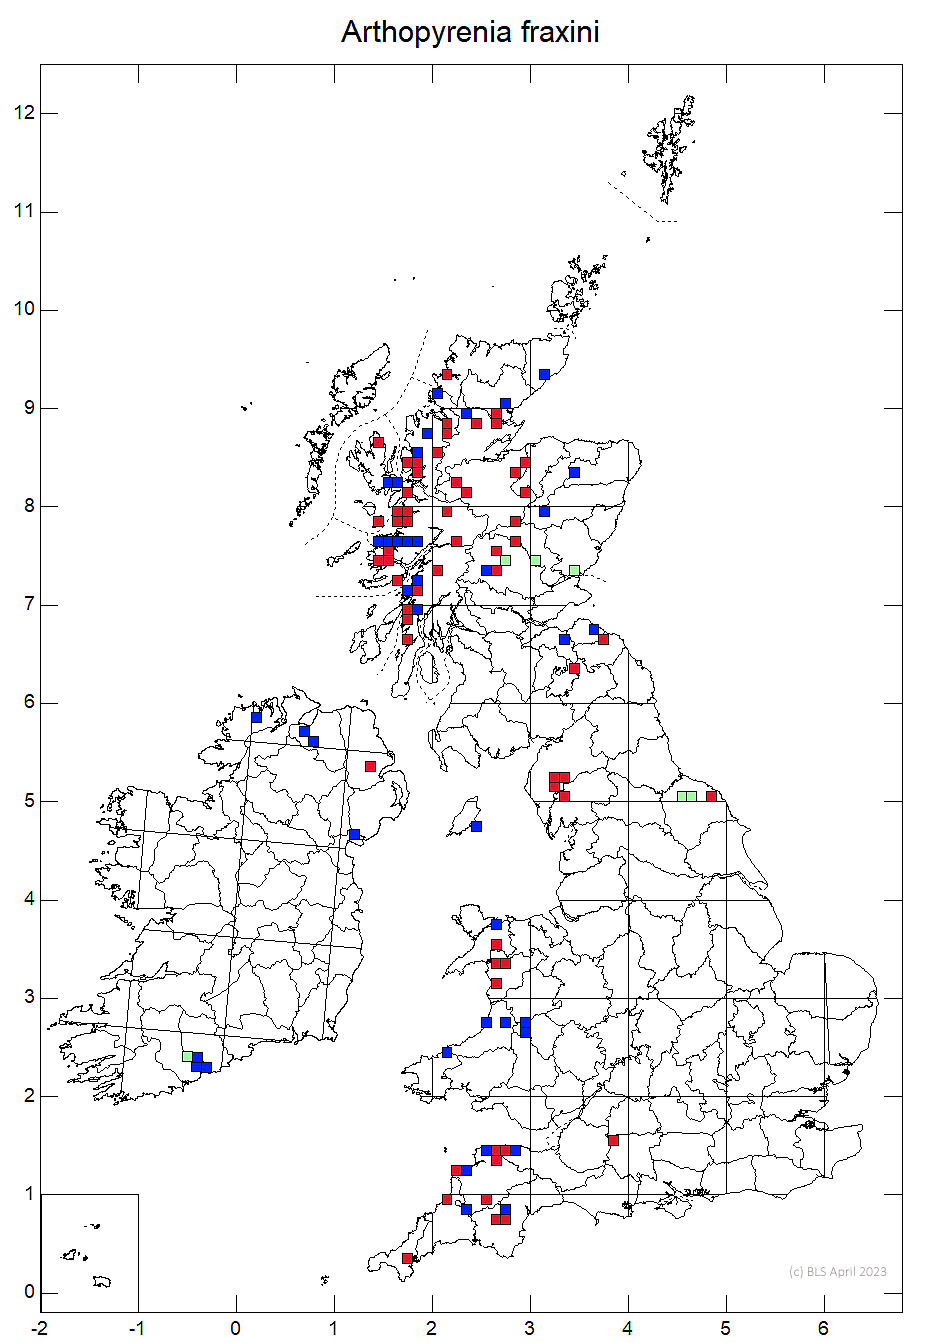 Arthopyrenia fraxini 10km sq distribution map